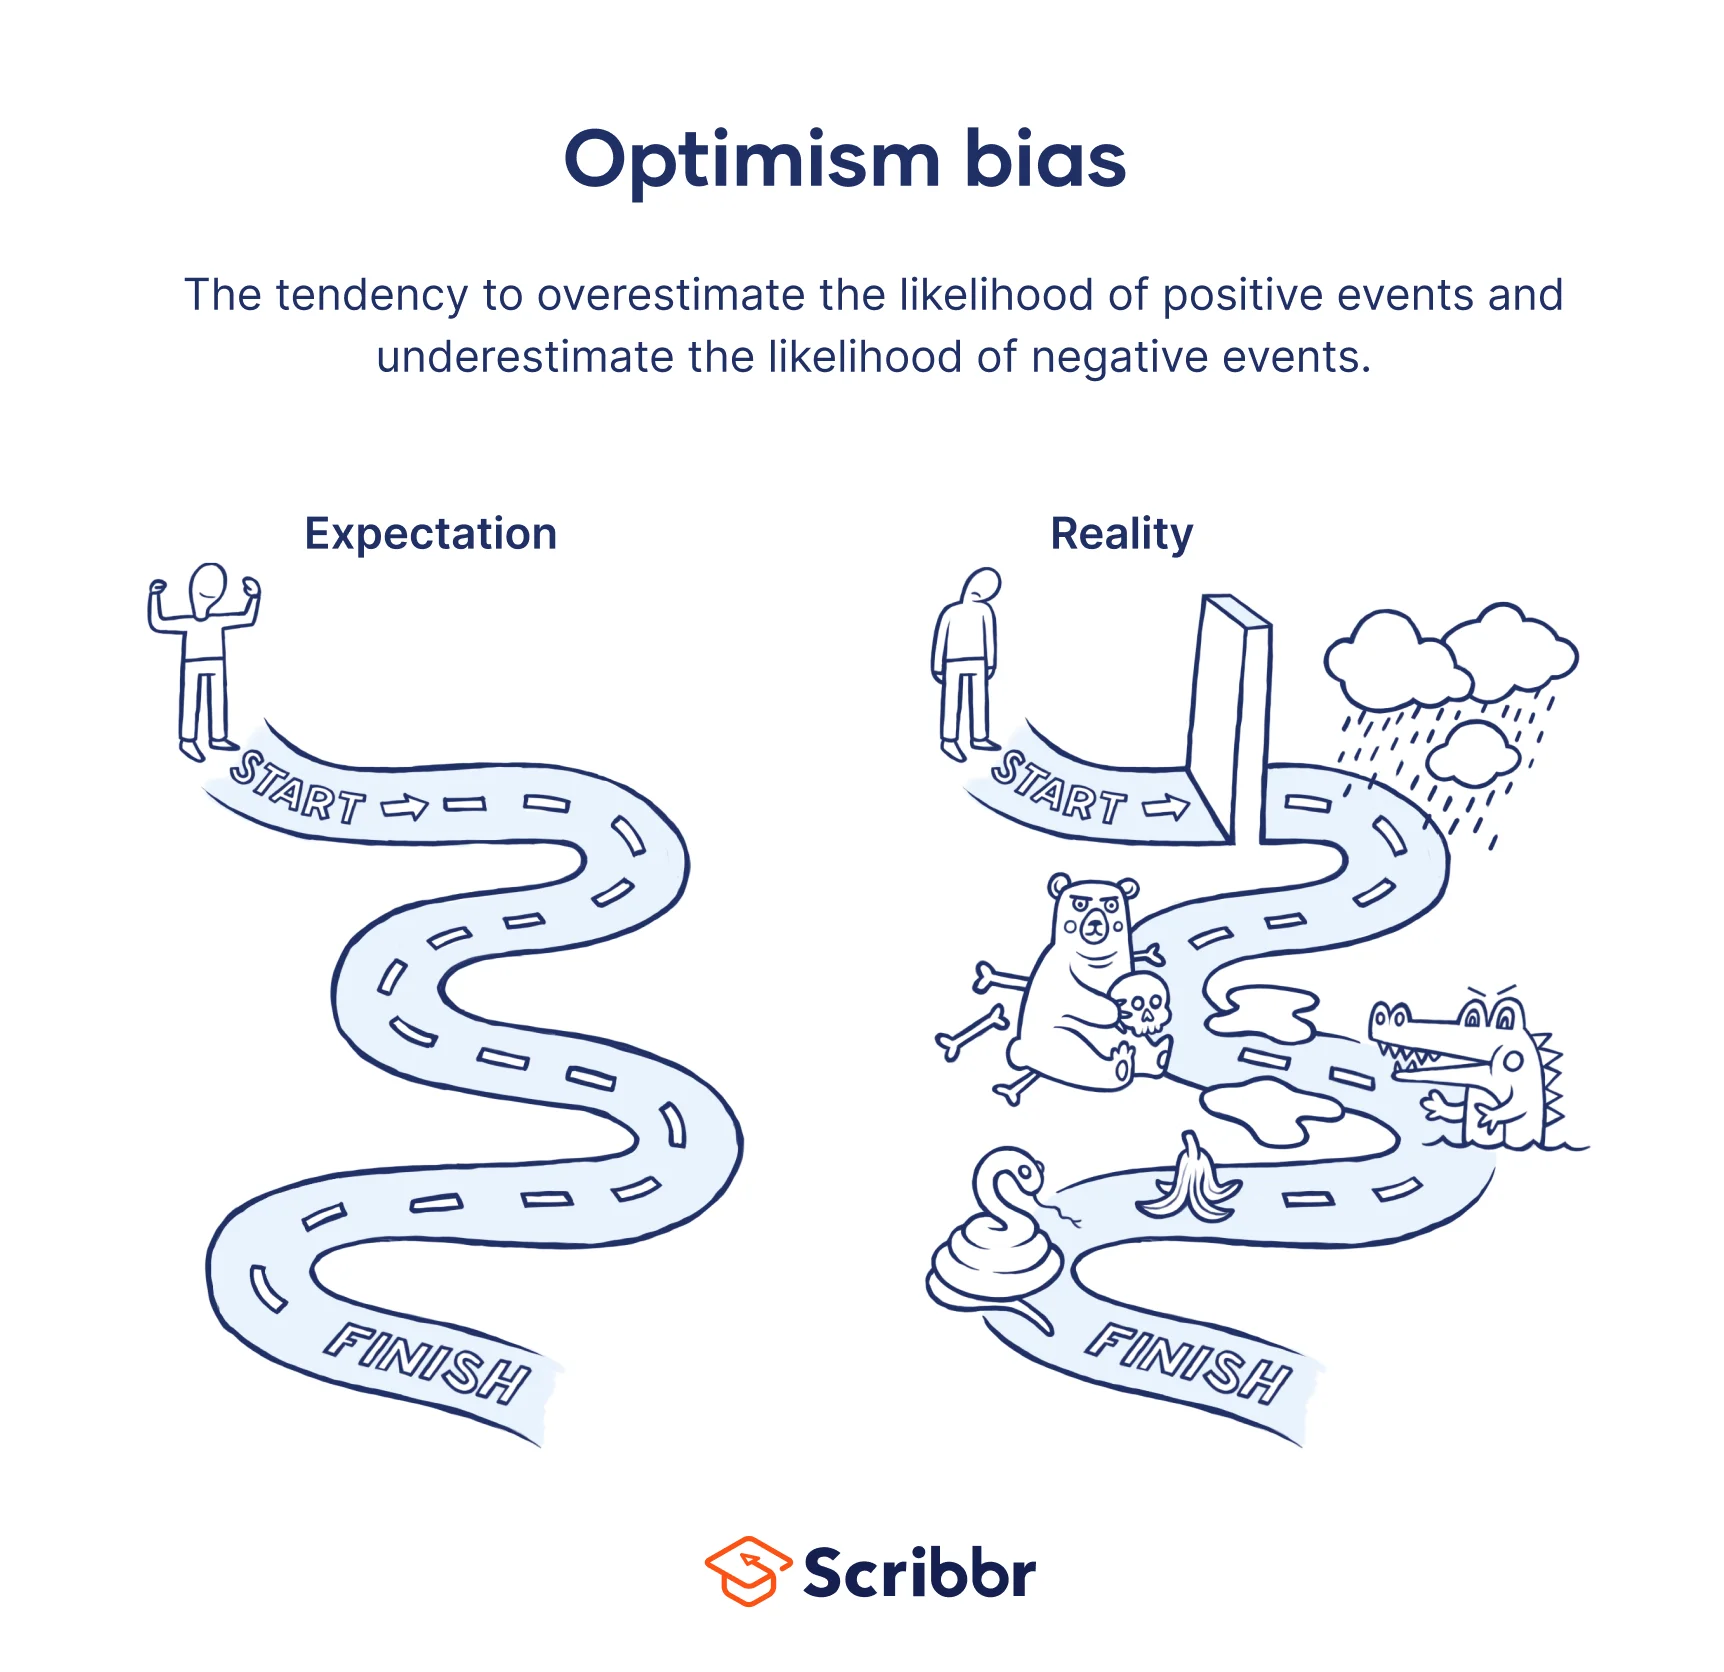 Optimism bias